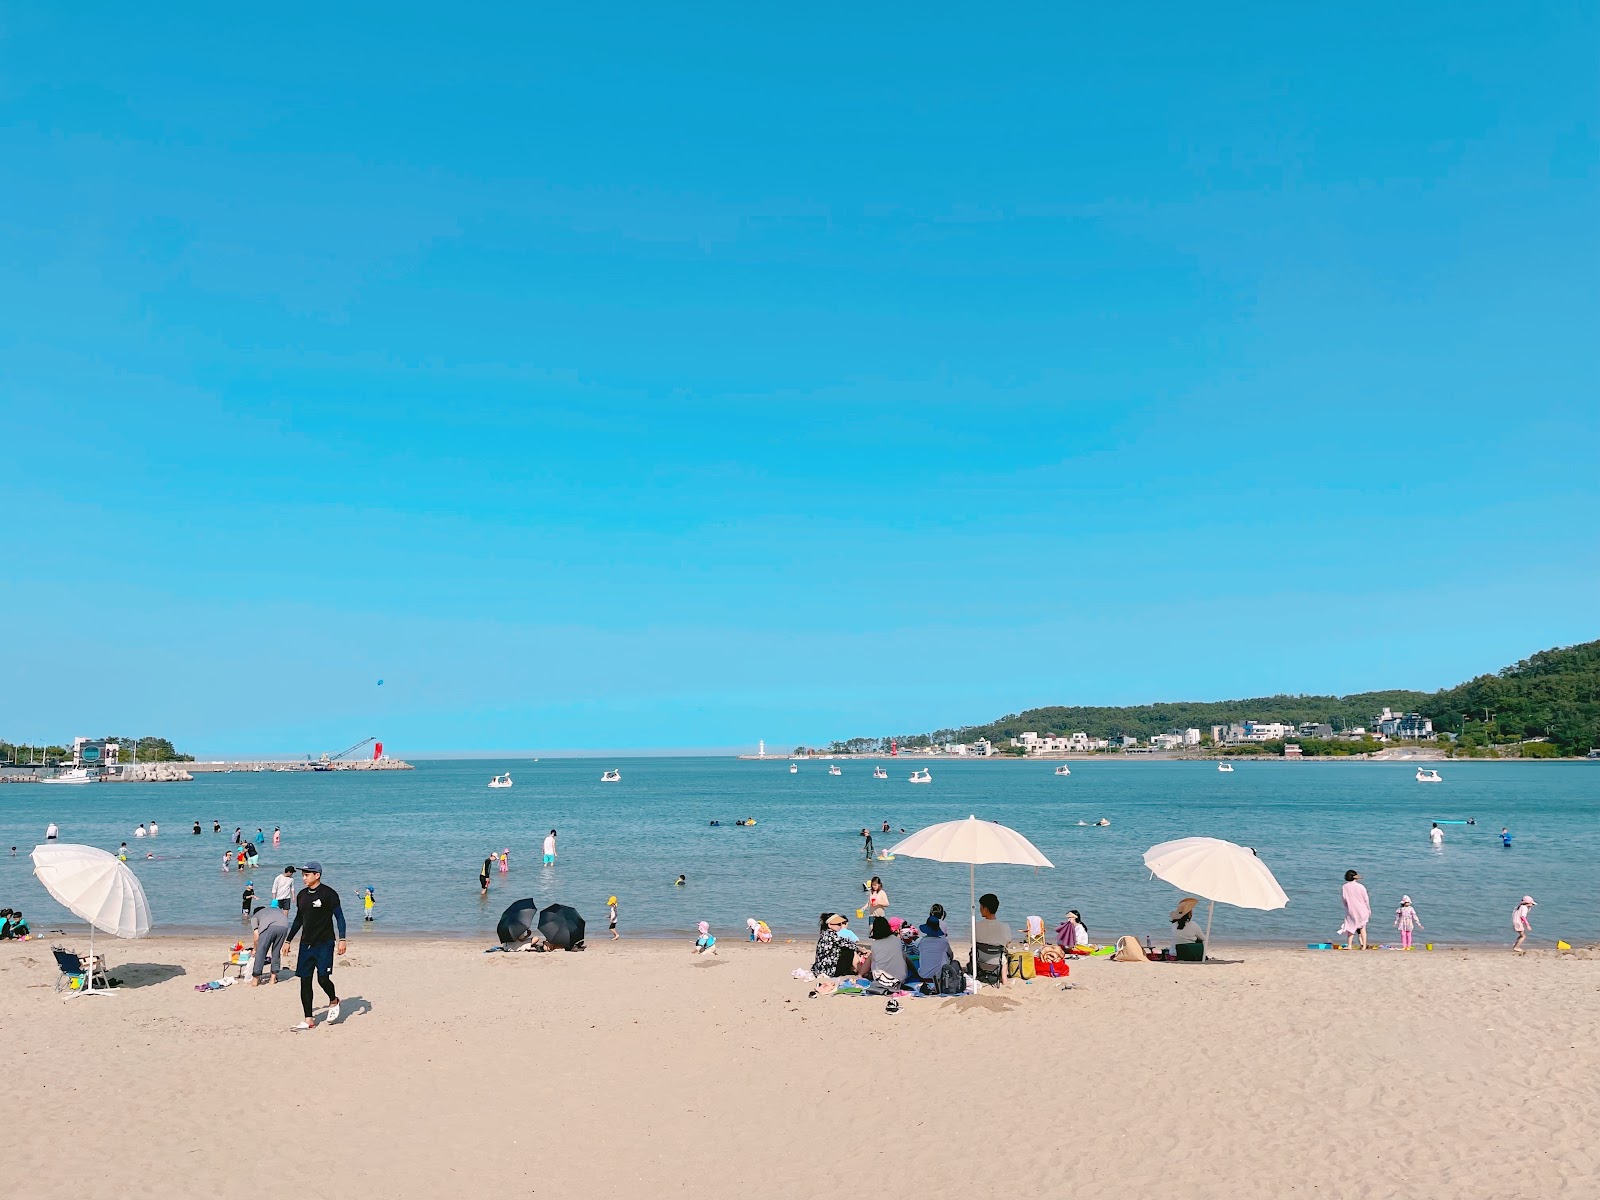 Foto de Playa Ilgwang - lugar popular entre los conocedores del relax